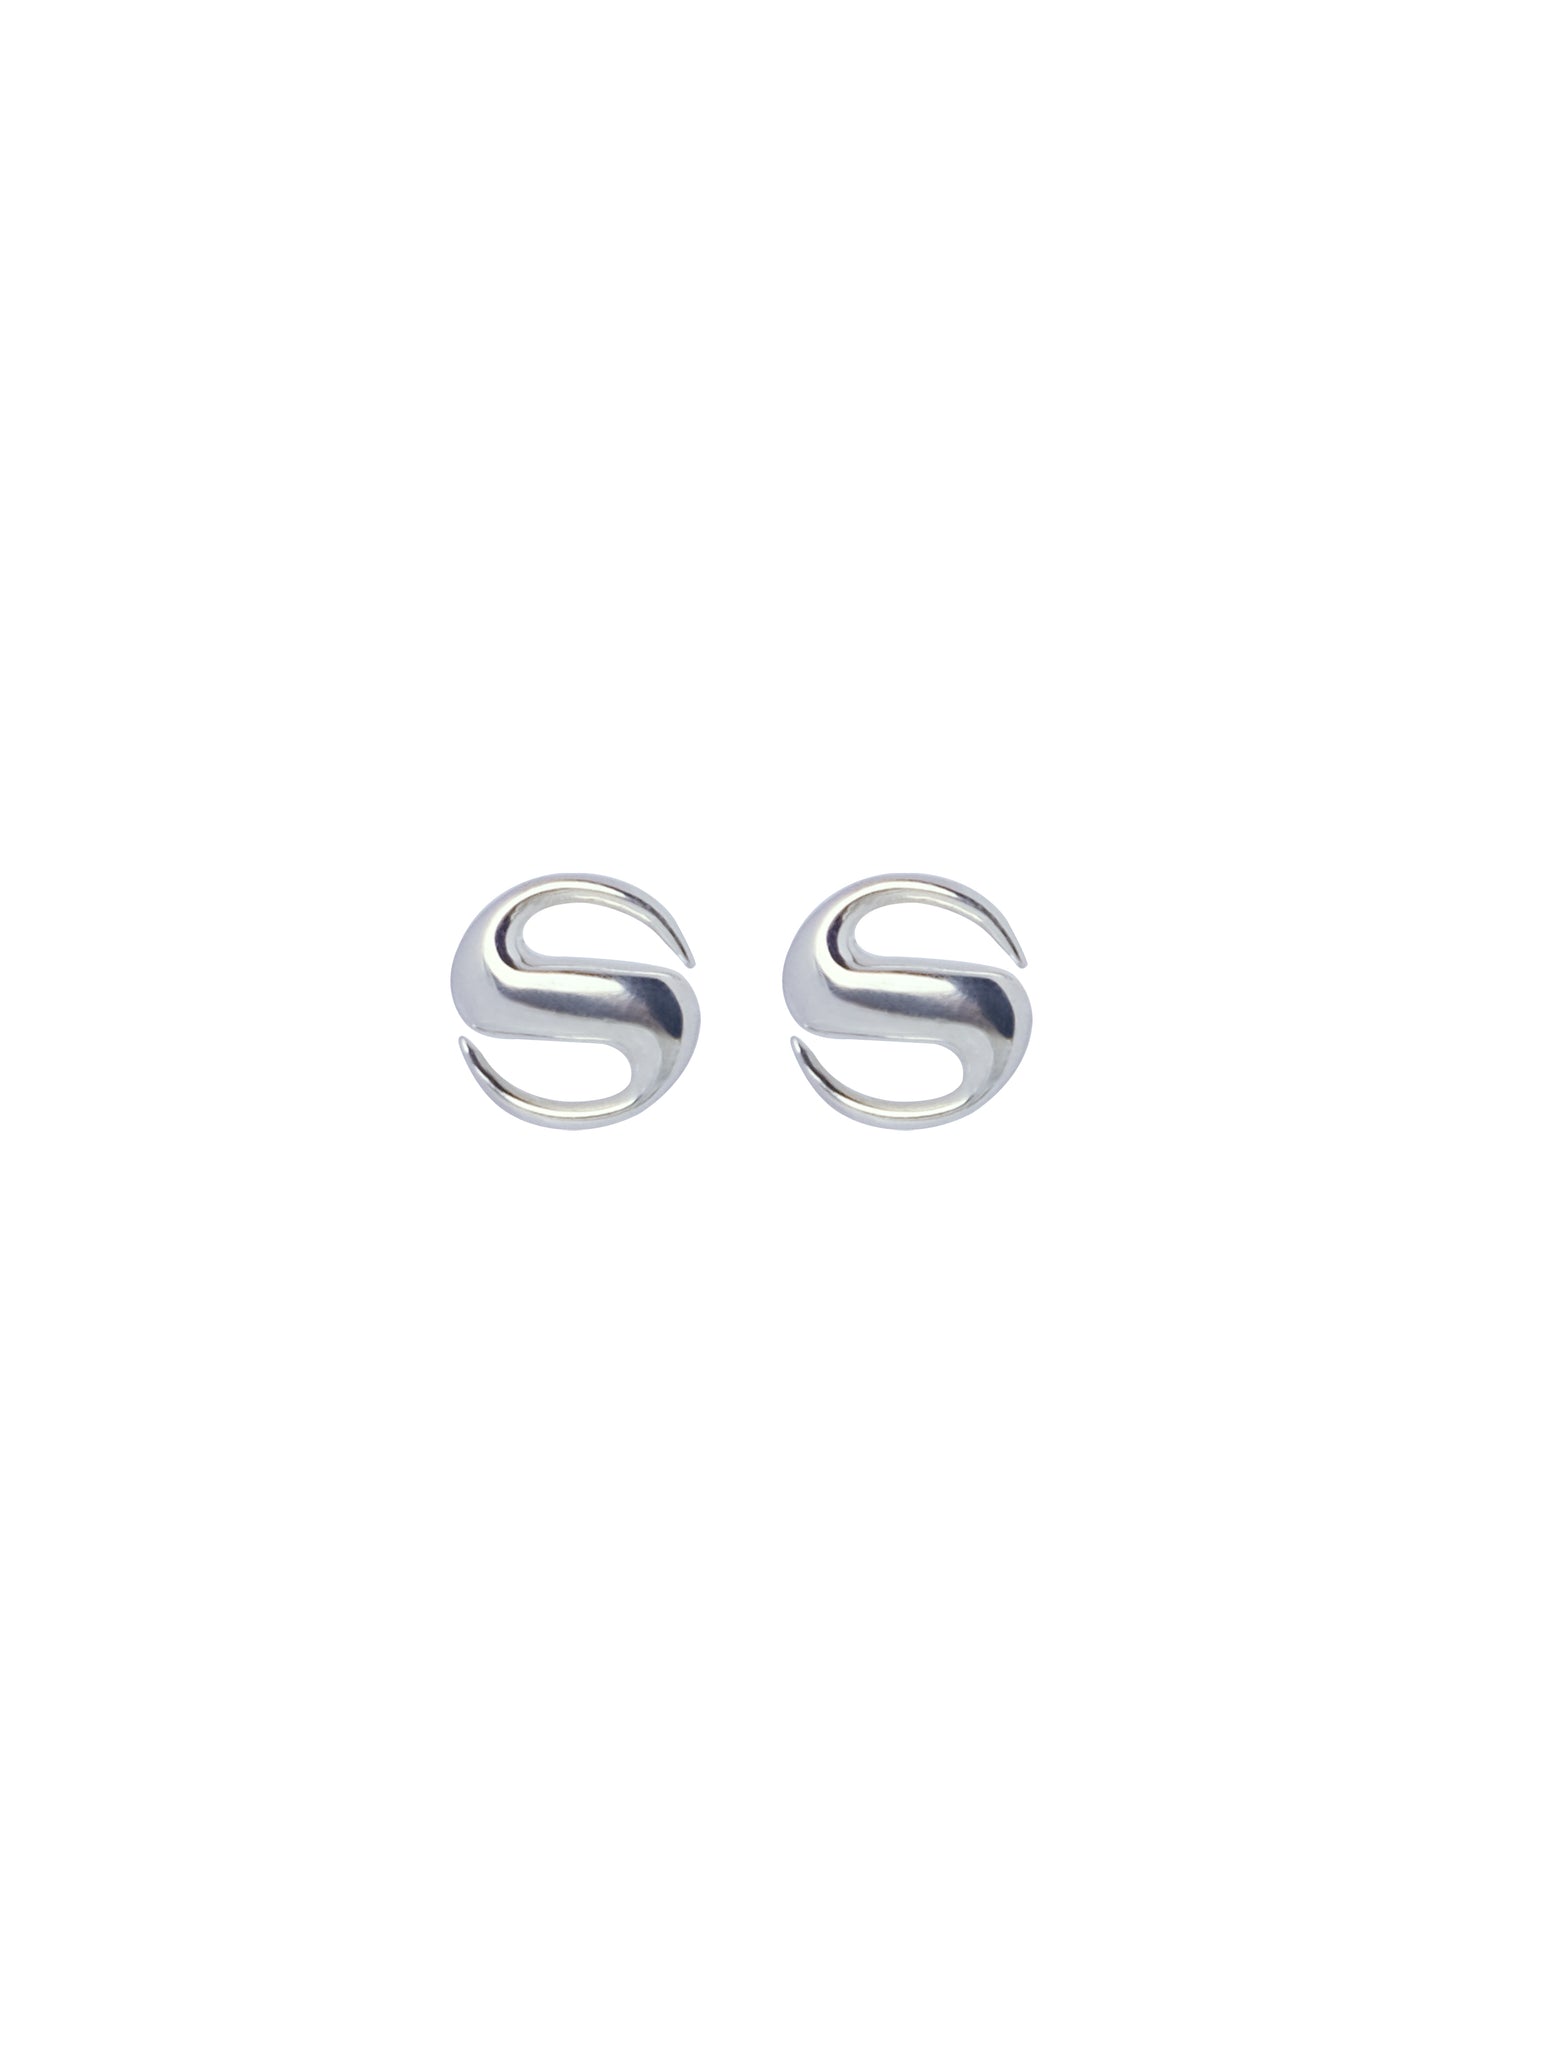 RWND Earrings Sterling Silver